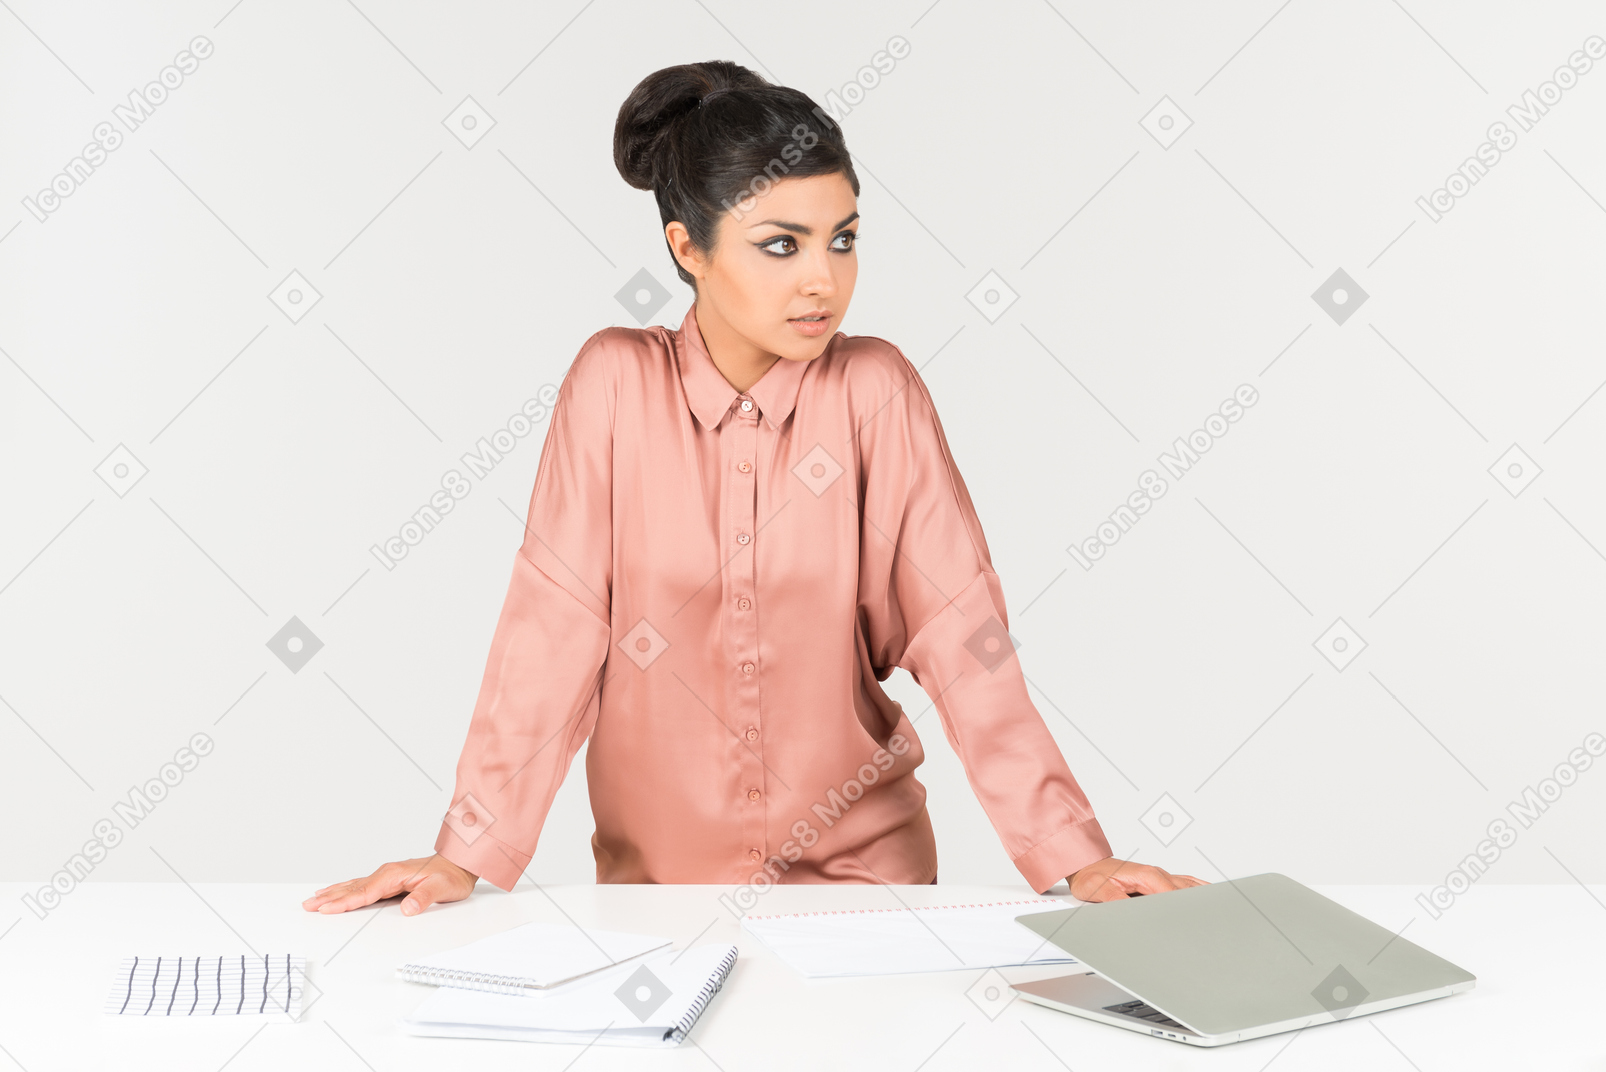 Jeune employé de bureau indien debout près de la table avec un ordinateur portable dessus